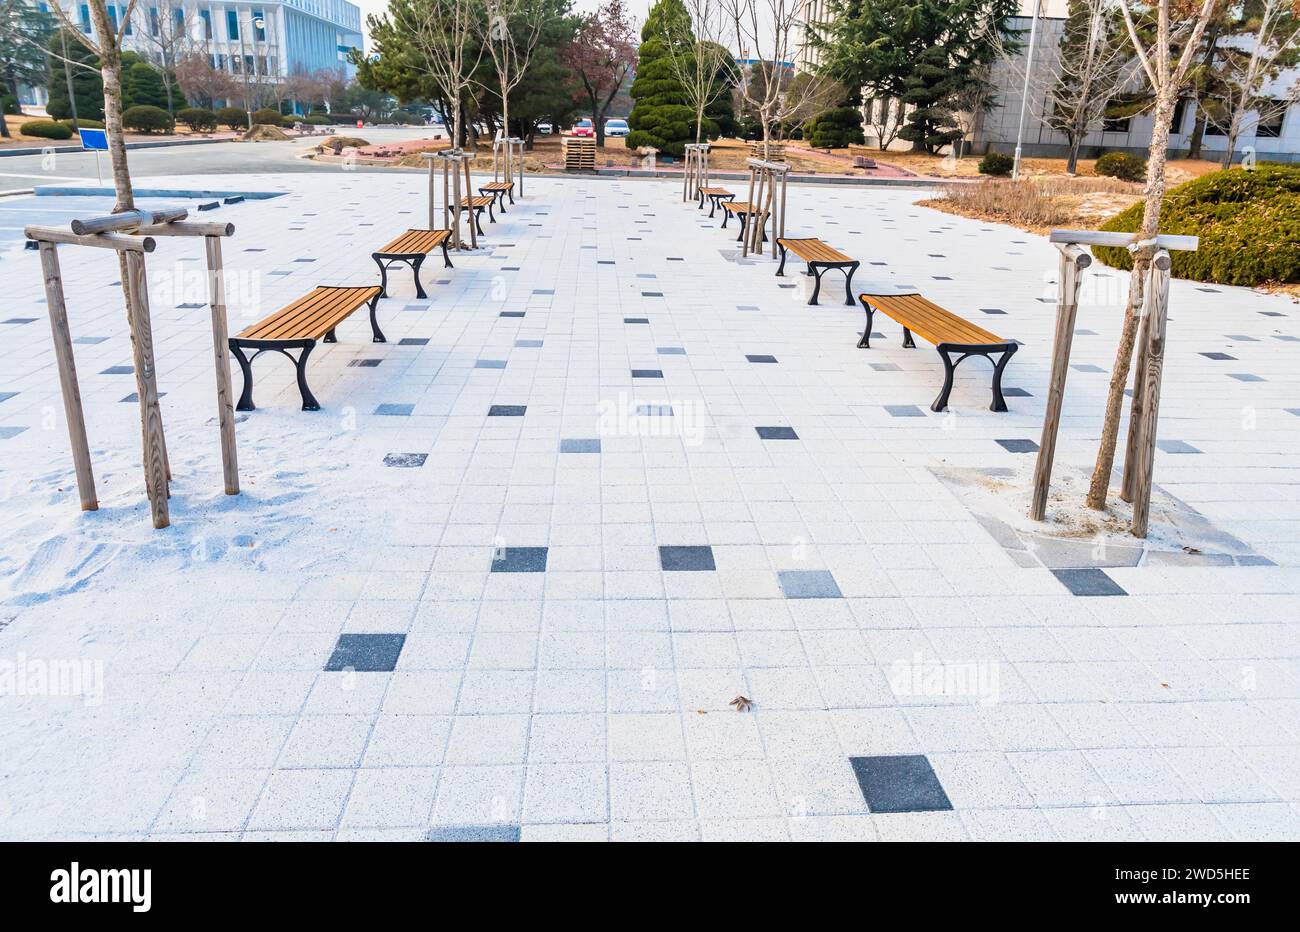 Paysage urbain de deux rangées de bancs de parc et de jeunes arbres sur plaza Walkway, Corée du Sud, Corée du Sud, Corée du Sud Banque D'Images